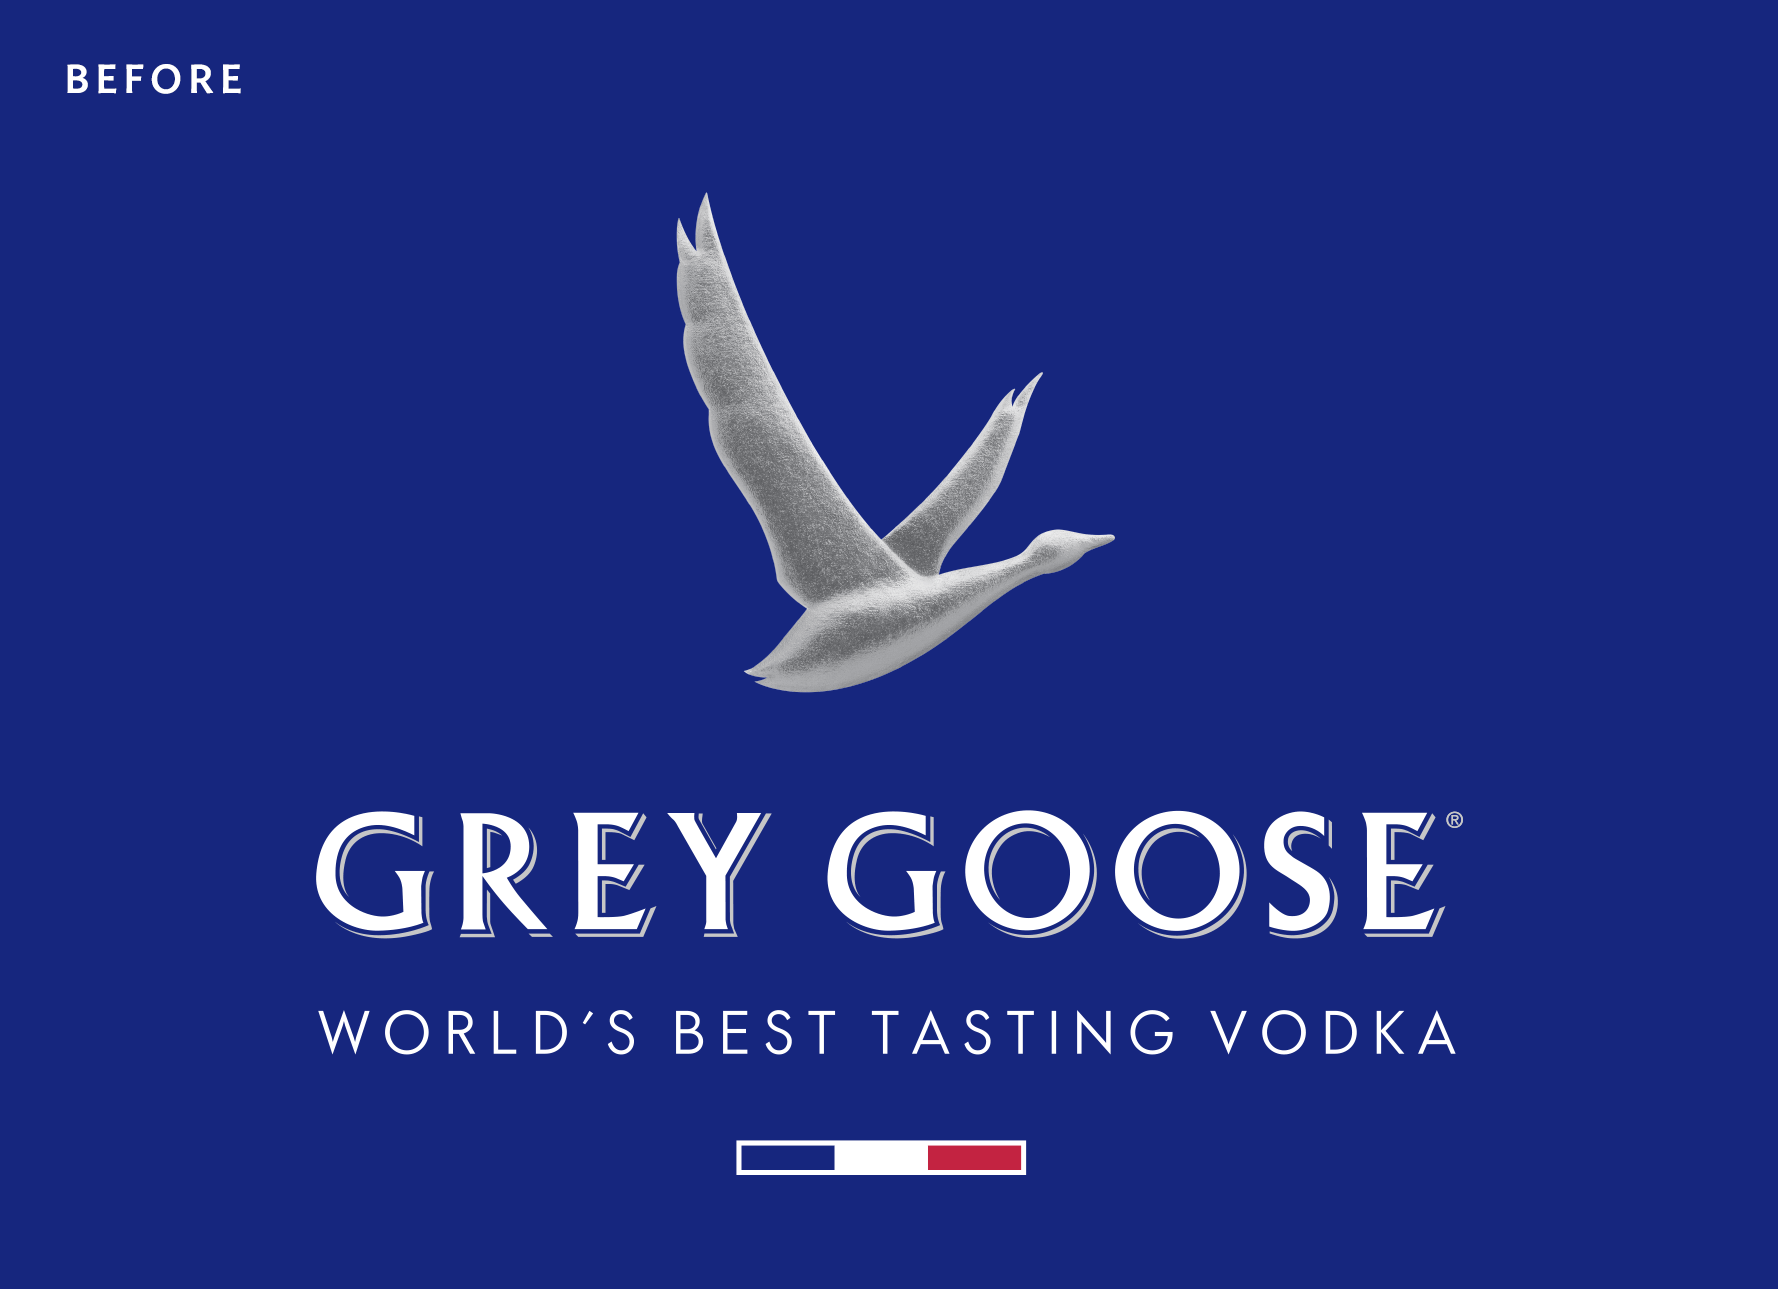 grey goose logo goose